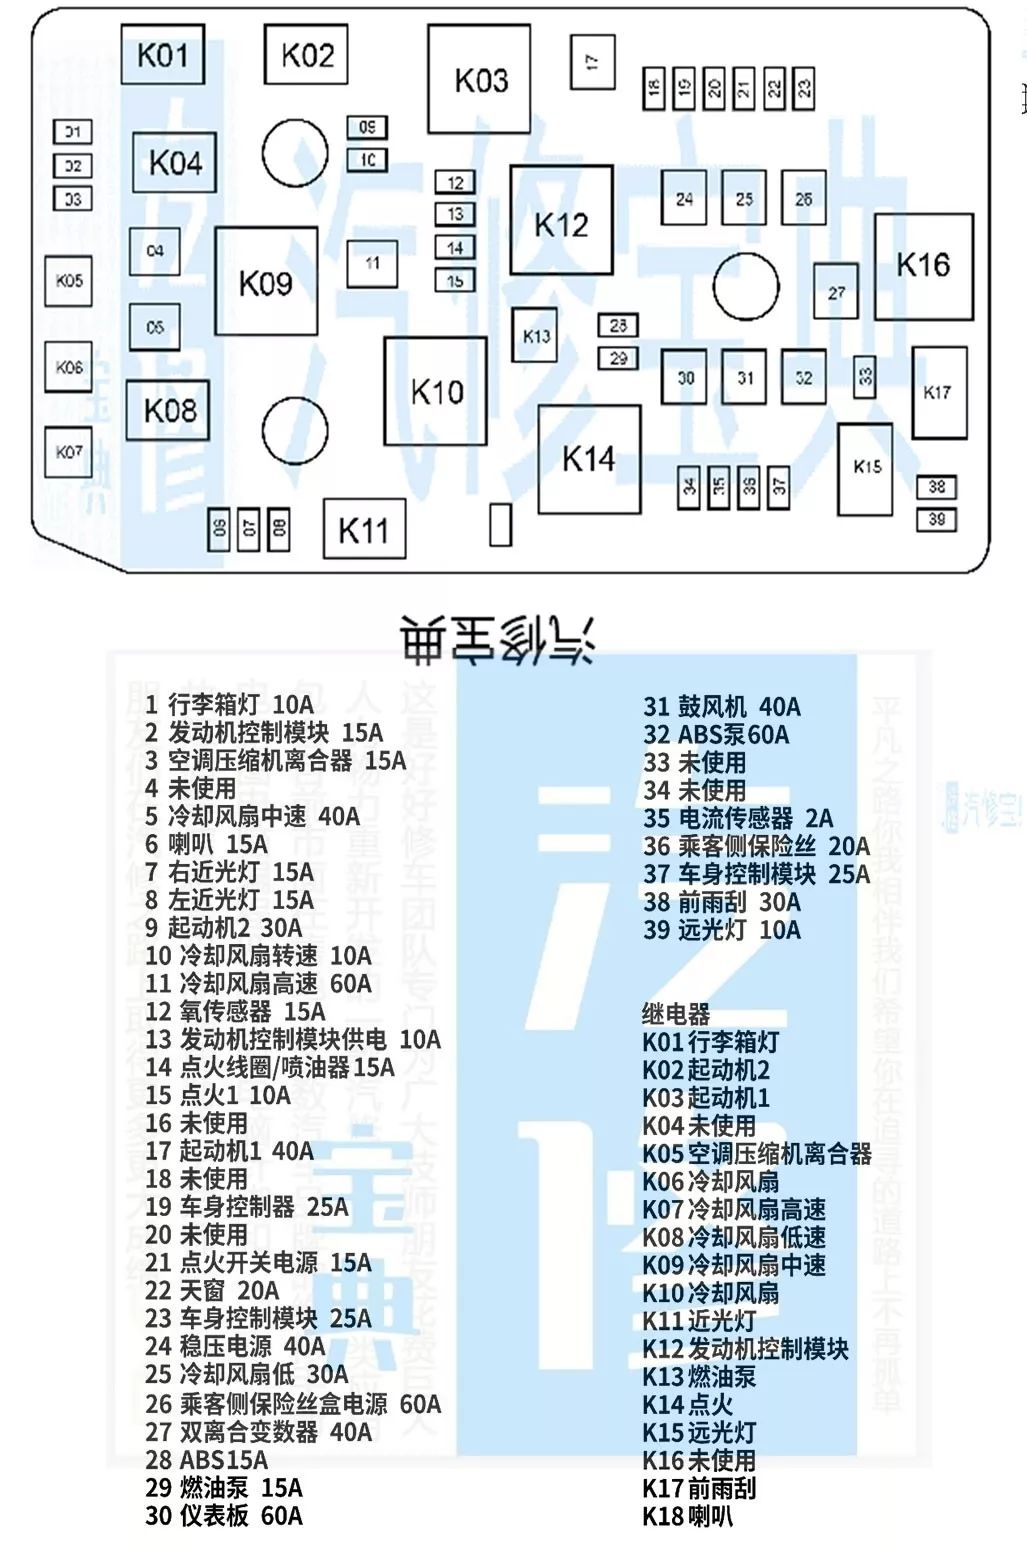 雨燕保险丝盒中文图解图片